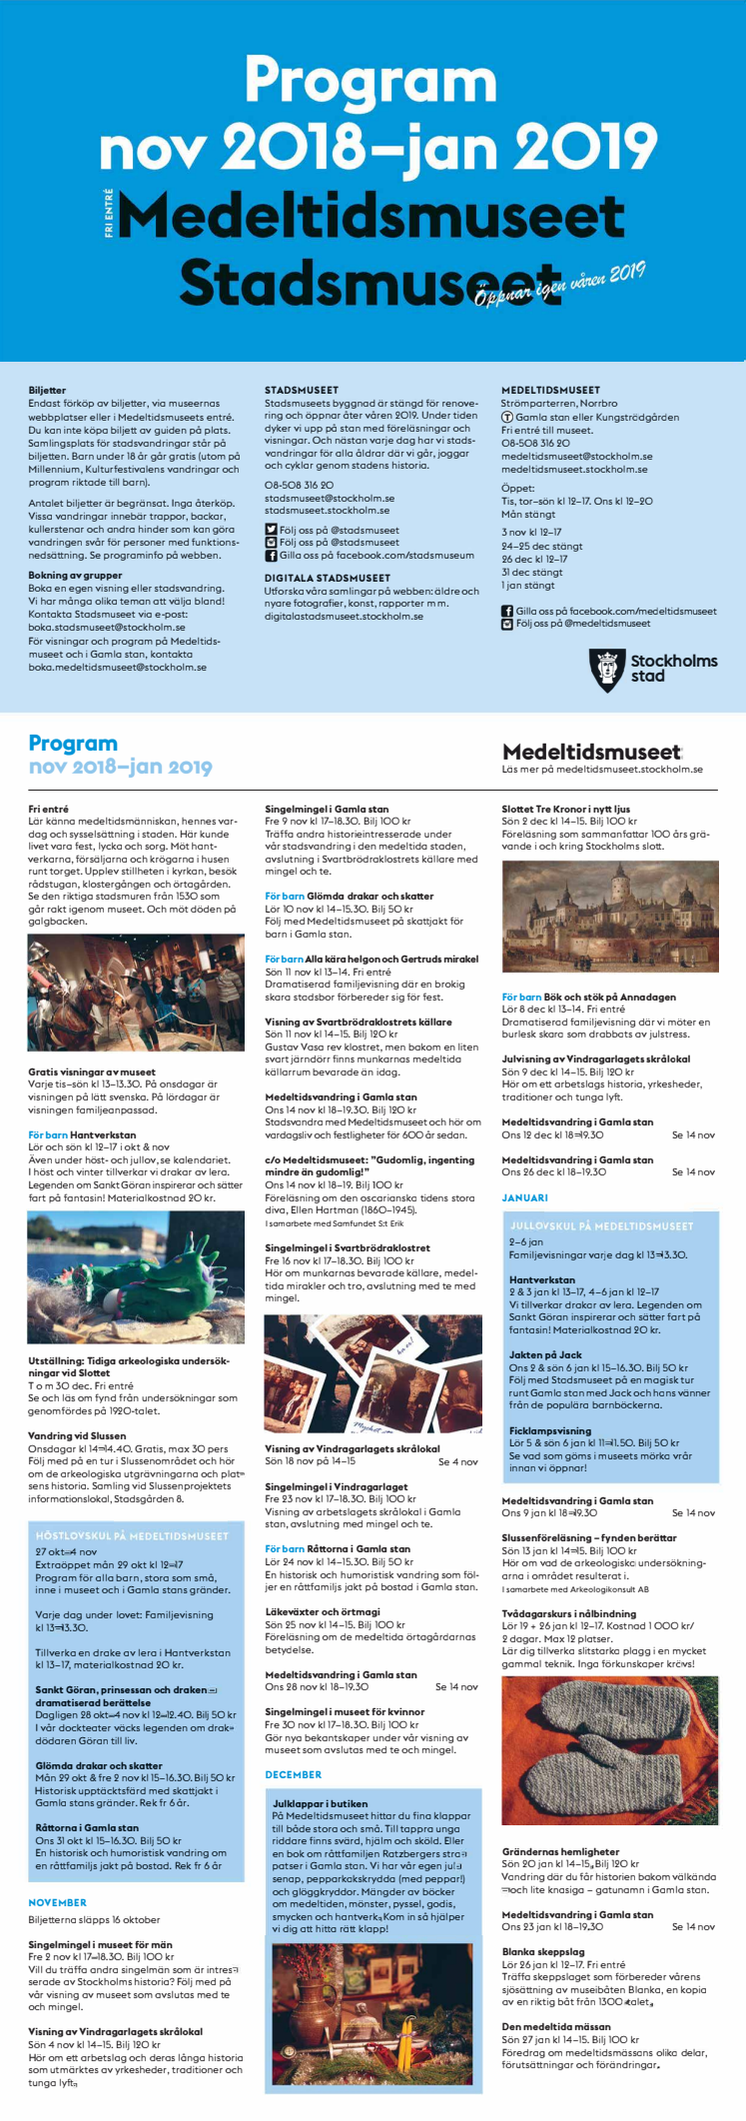 Stadsmuseets och Medeltidsmuseets program hösten 2018/vintern 2019